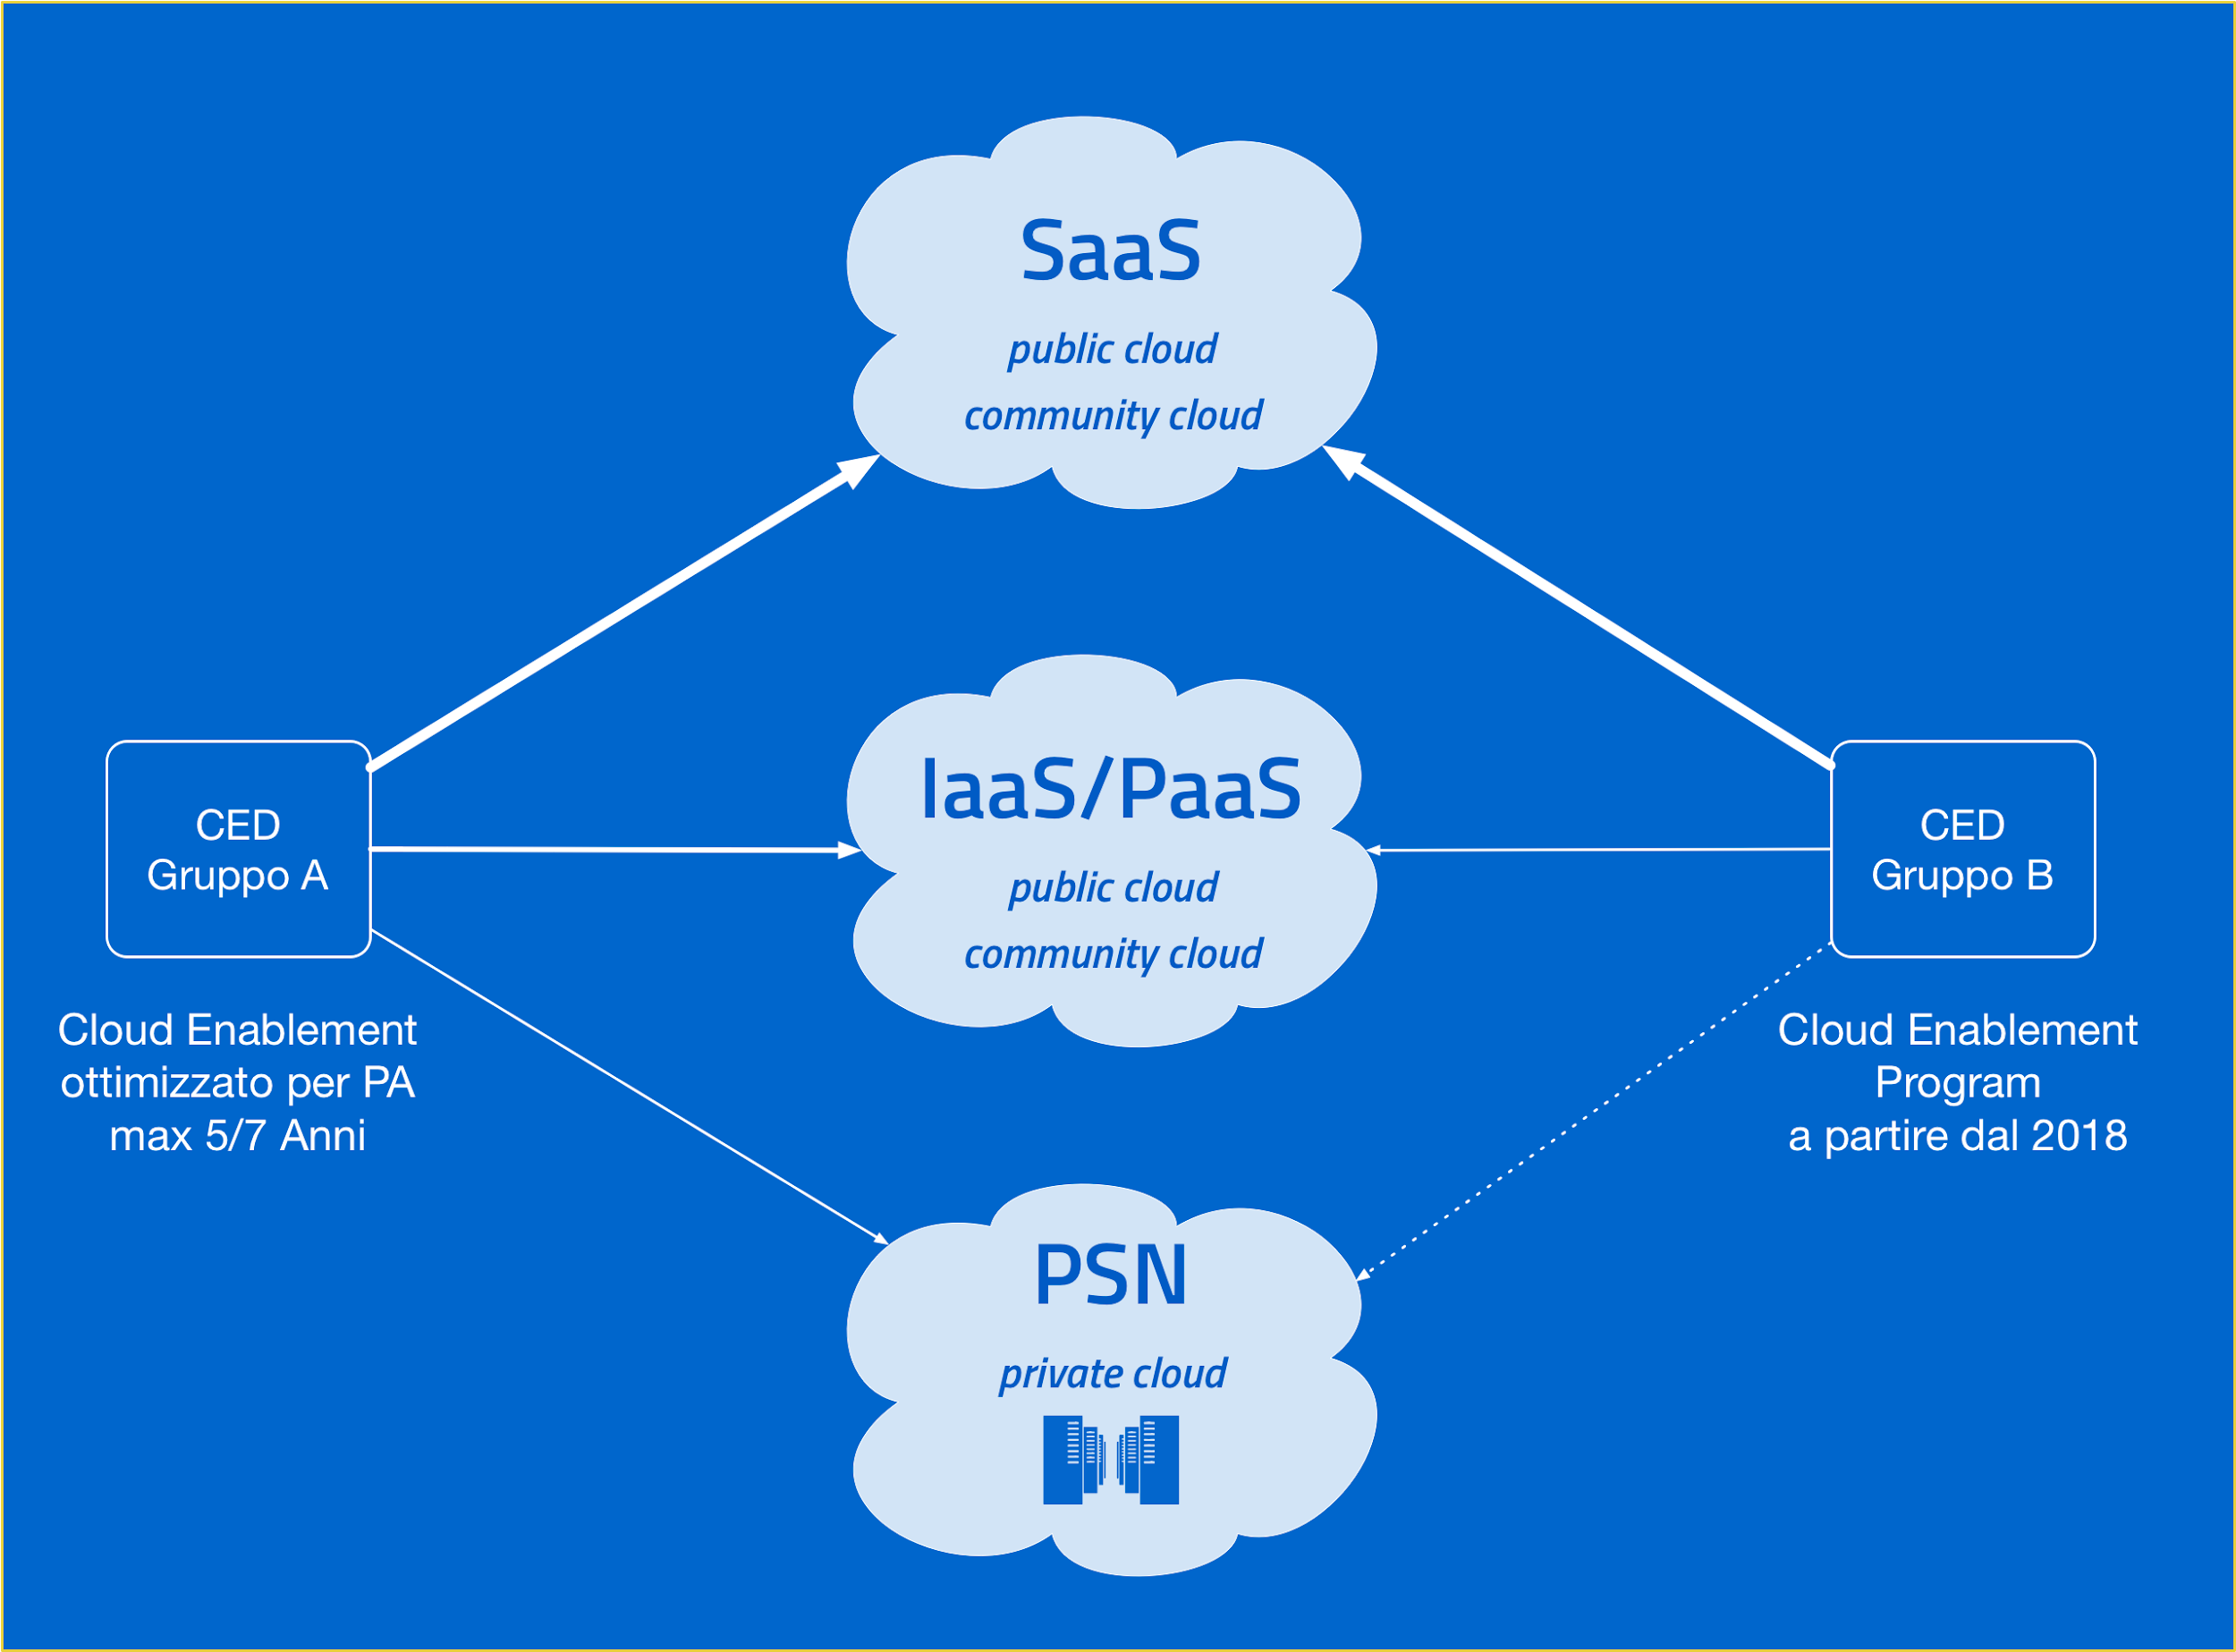 Un'immagine che mostra la distribuzione dei servizi secondo il Cloud Enablement program.